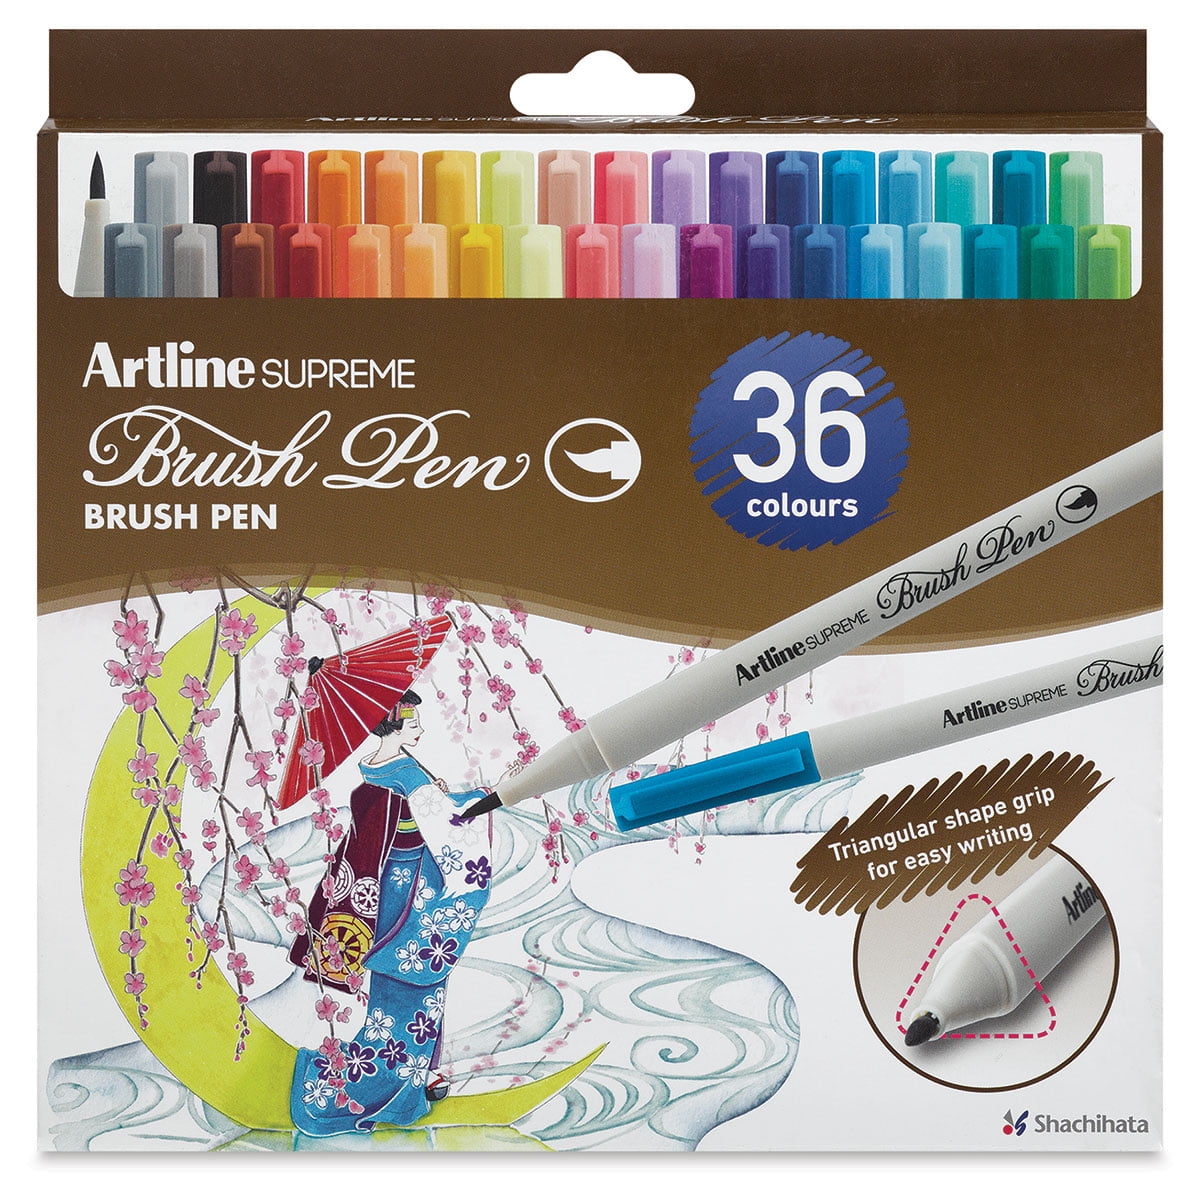 kopiëren was In de meeste gevallen Artline Supreme Brush Pens - Set of 36, Assorted Colors - Walmart.com